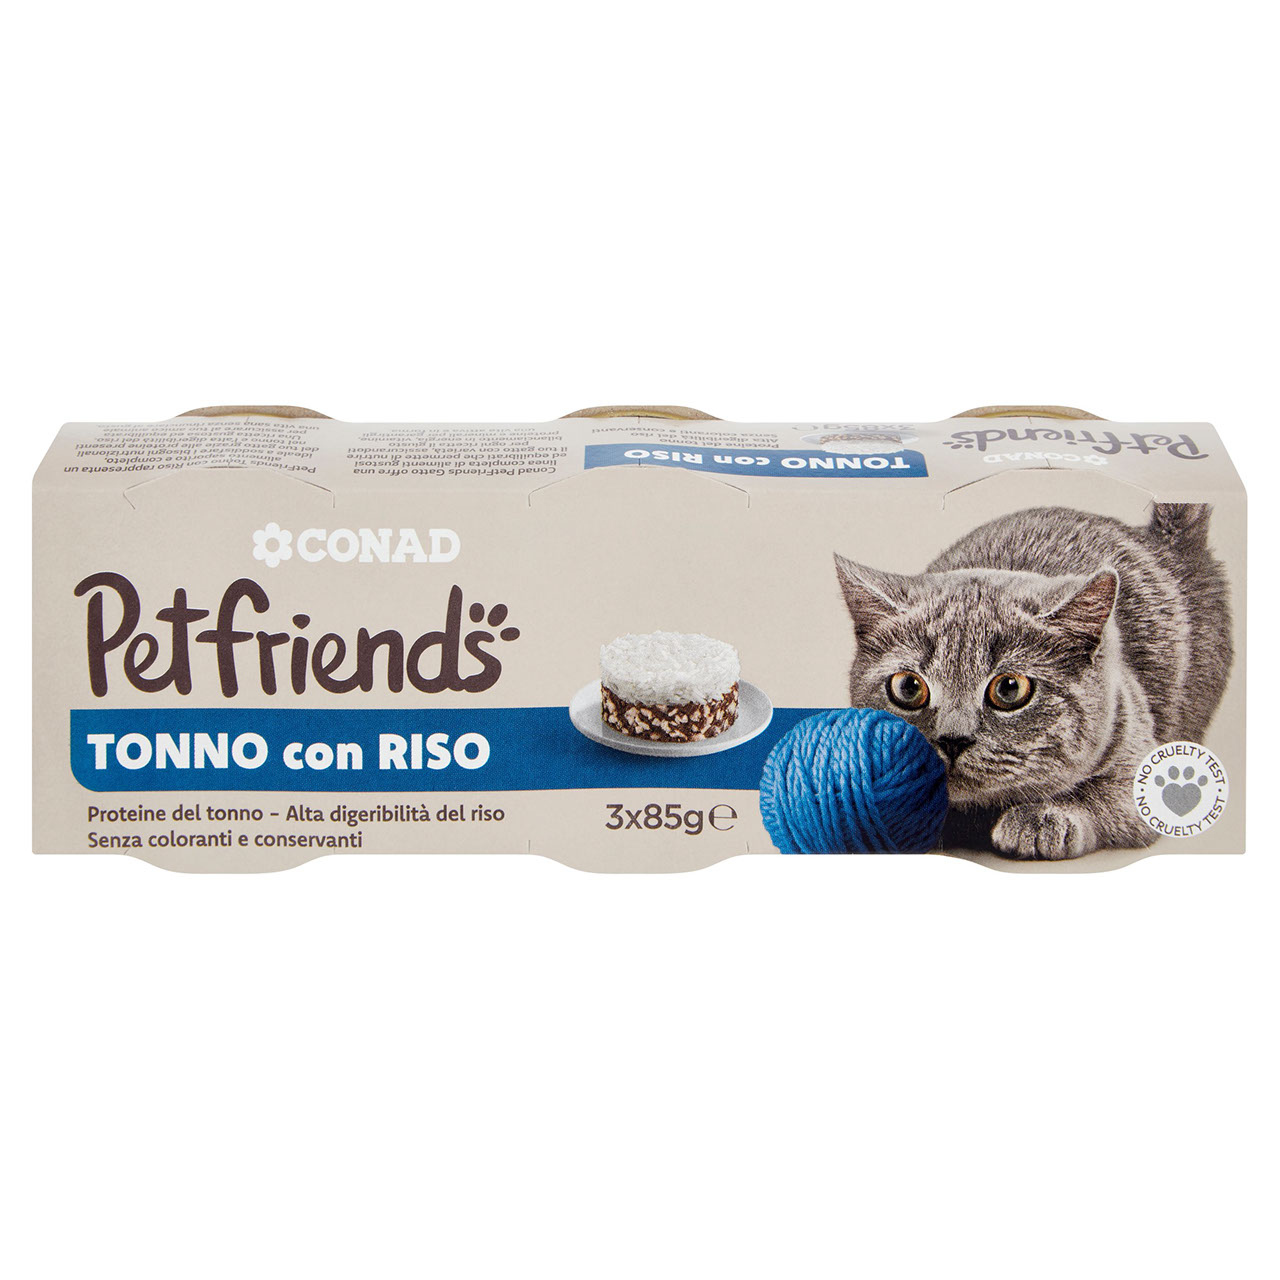 Petfriends Tonno con Riso 3 x 85 g Conad